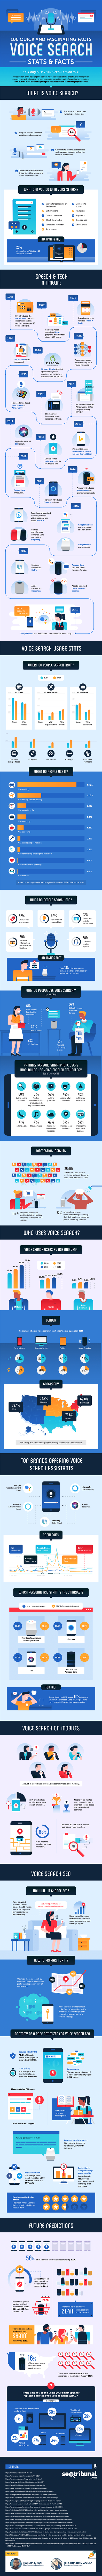 voice-search infografik 2018